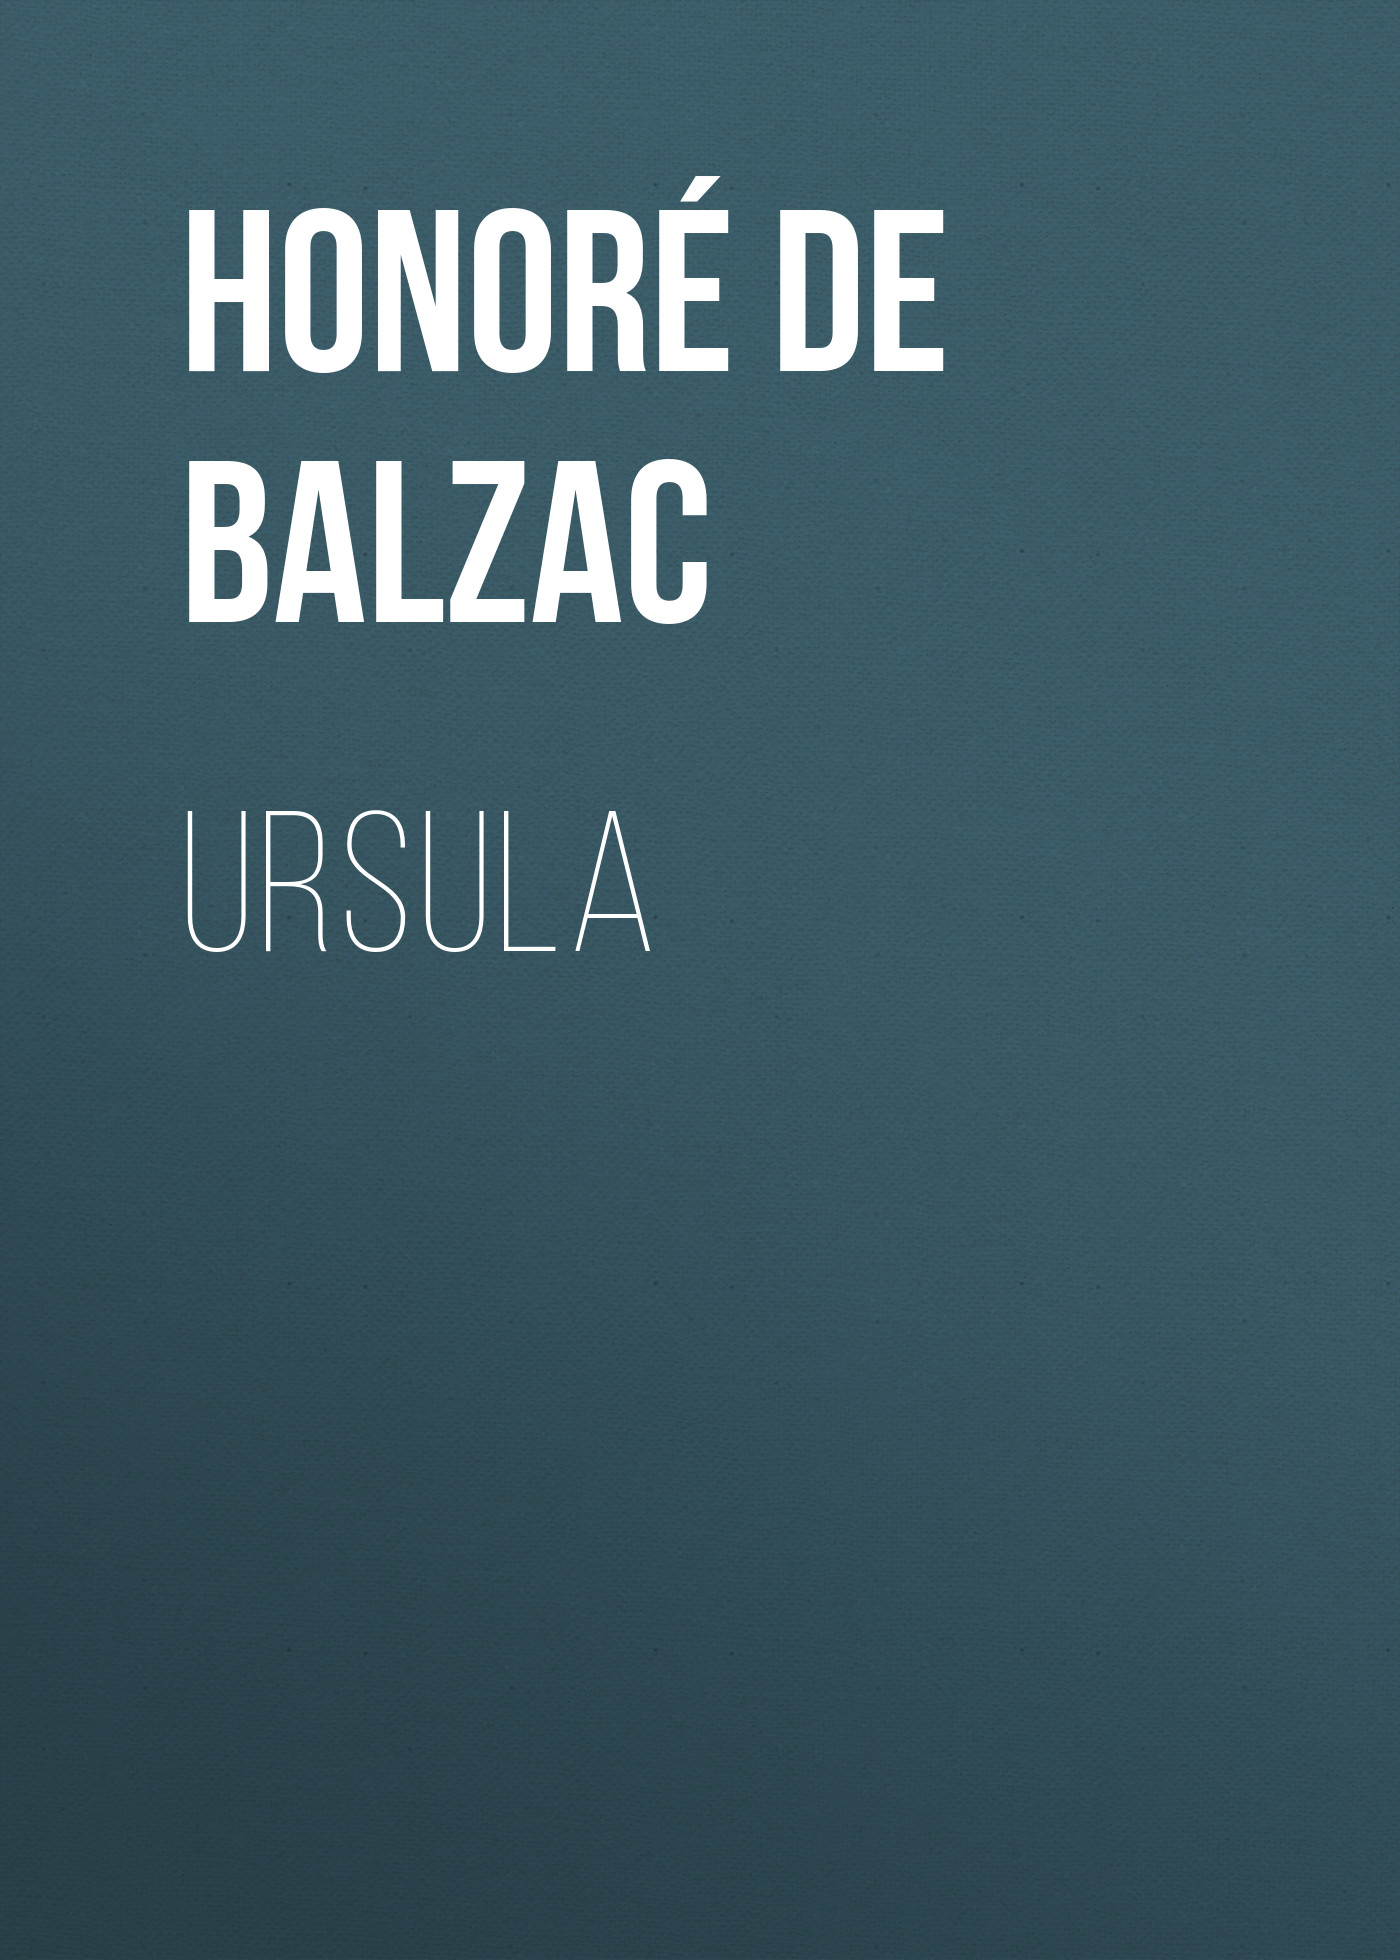 Книга Ursula из серии , созданная Honoré Balzac, может относится к жанру Литература 19 века, Зарубежная старинная литература, Зарубежная классика. Стоимость электронной книги Ursula с идентификатором 25020995 составляет 0 руб.